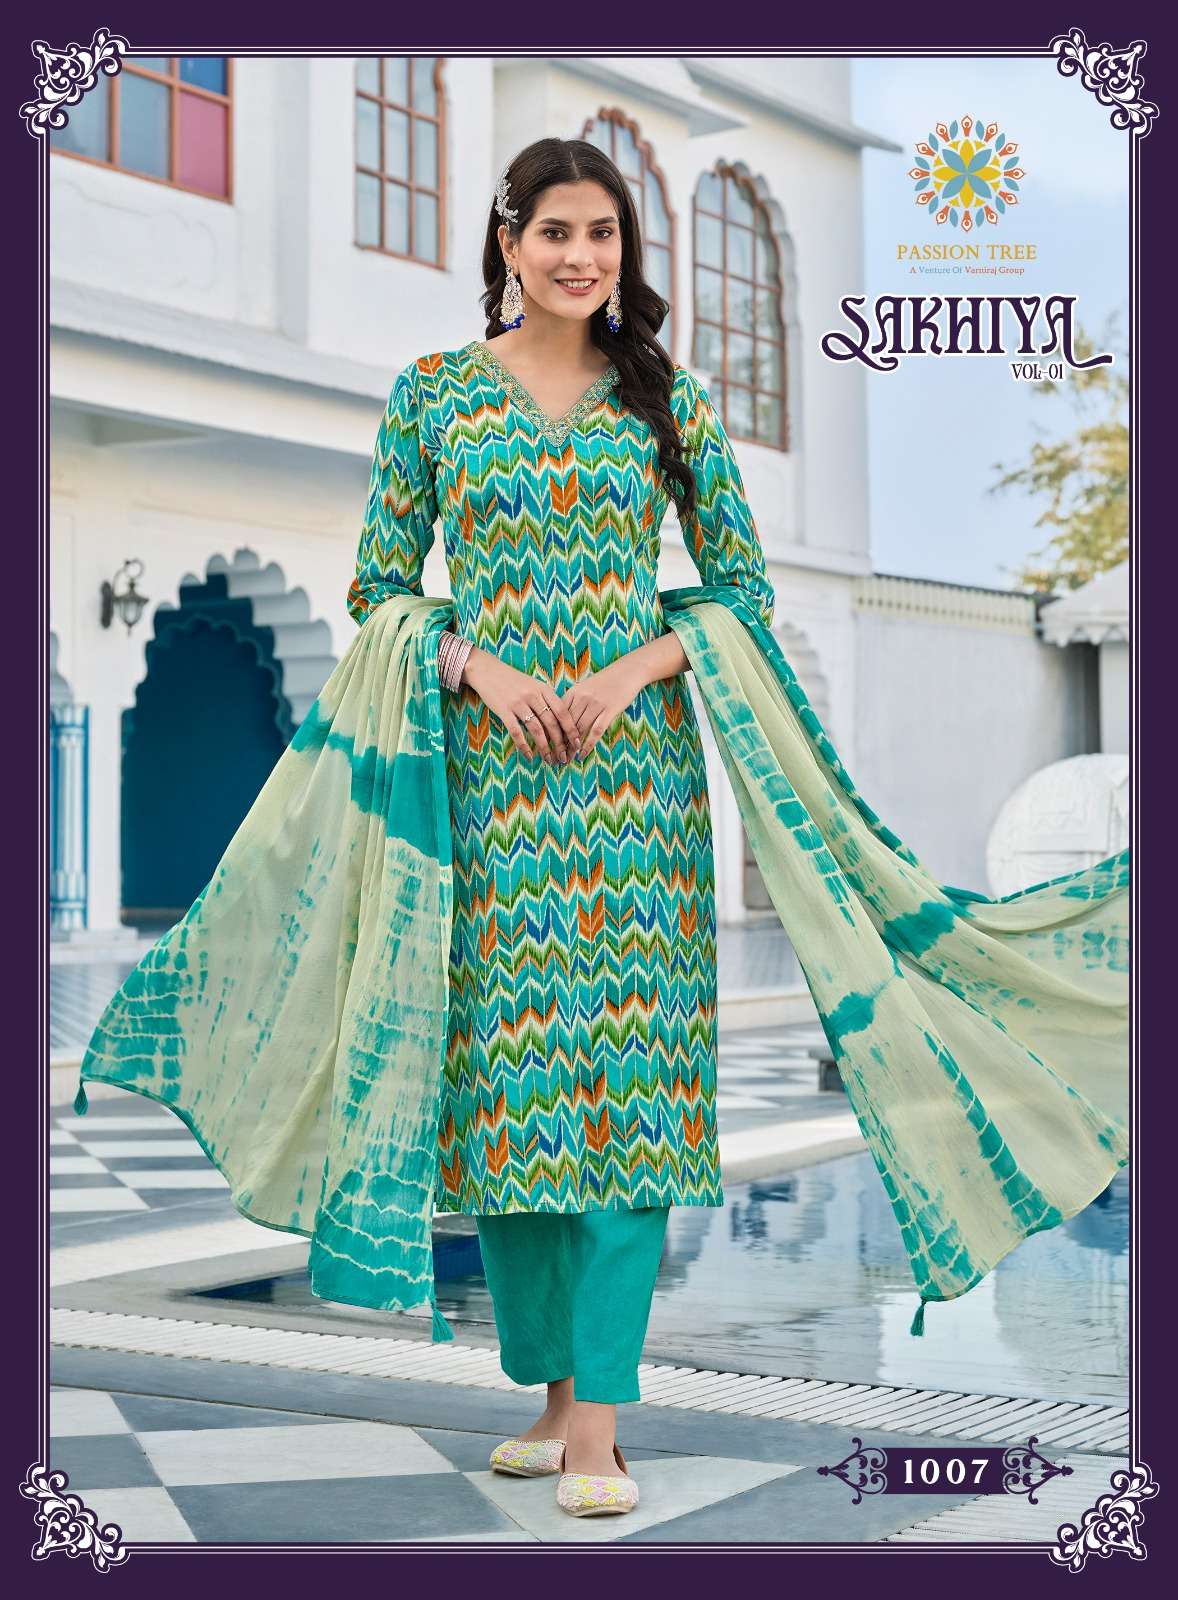 passion tree sakhiya vol-1 1001-1008 series rayon designer kurtis pant with dupatta set at wholesale price